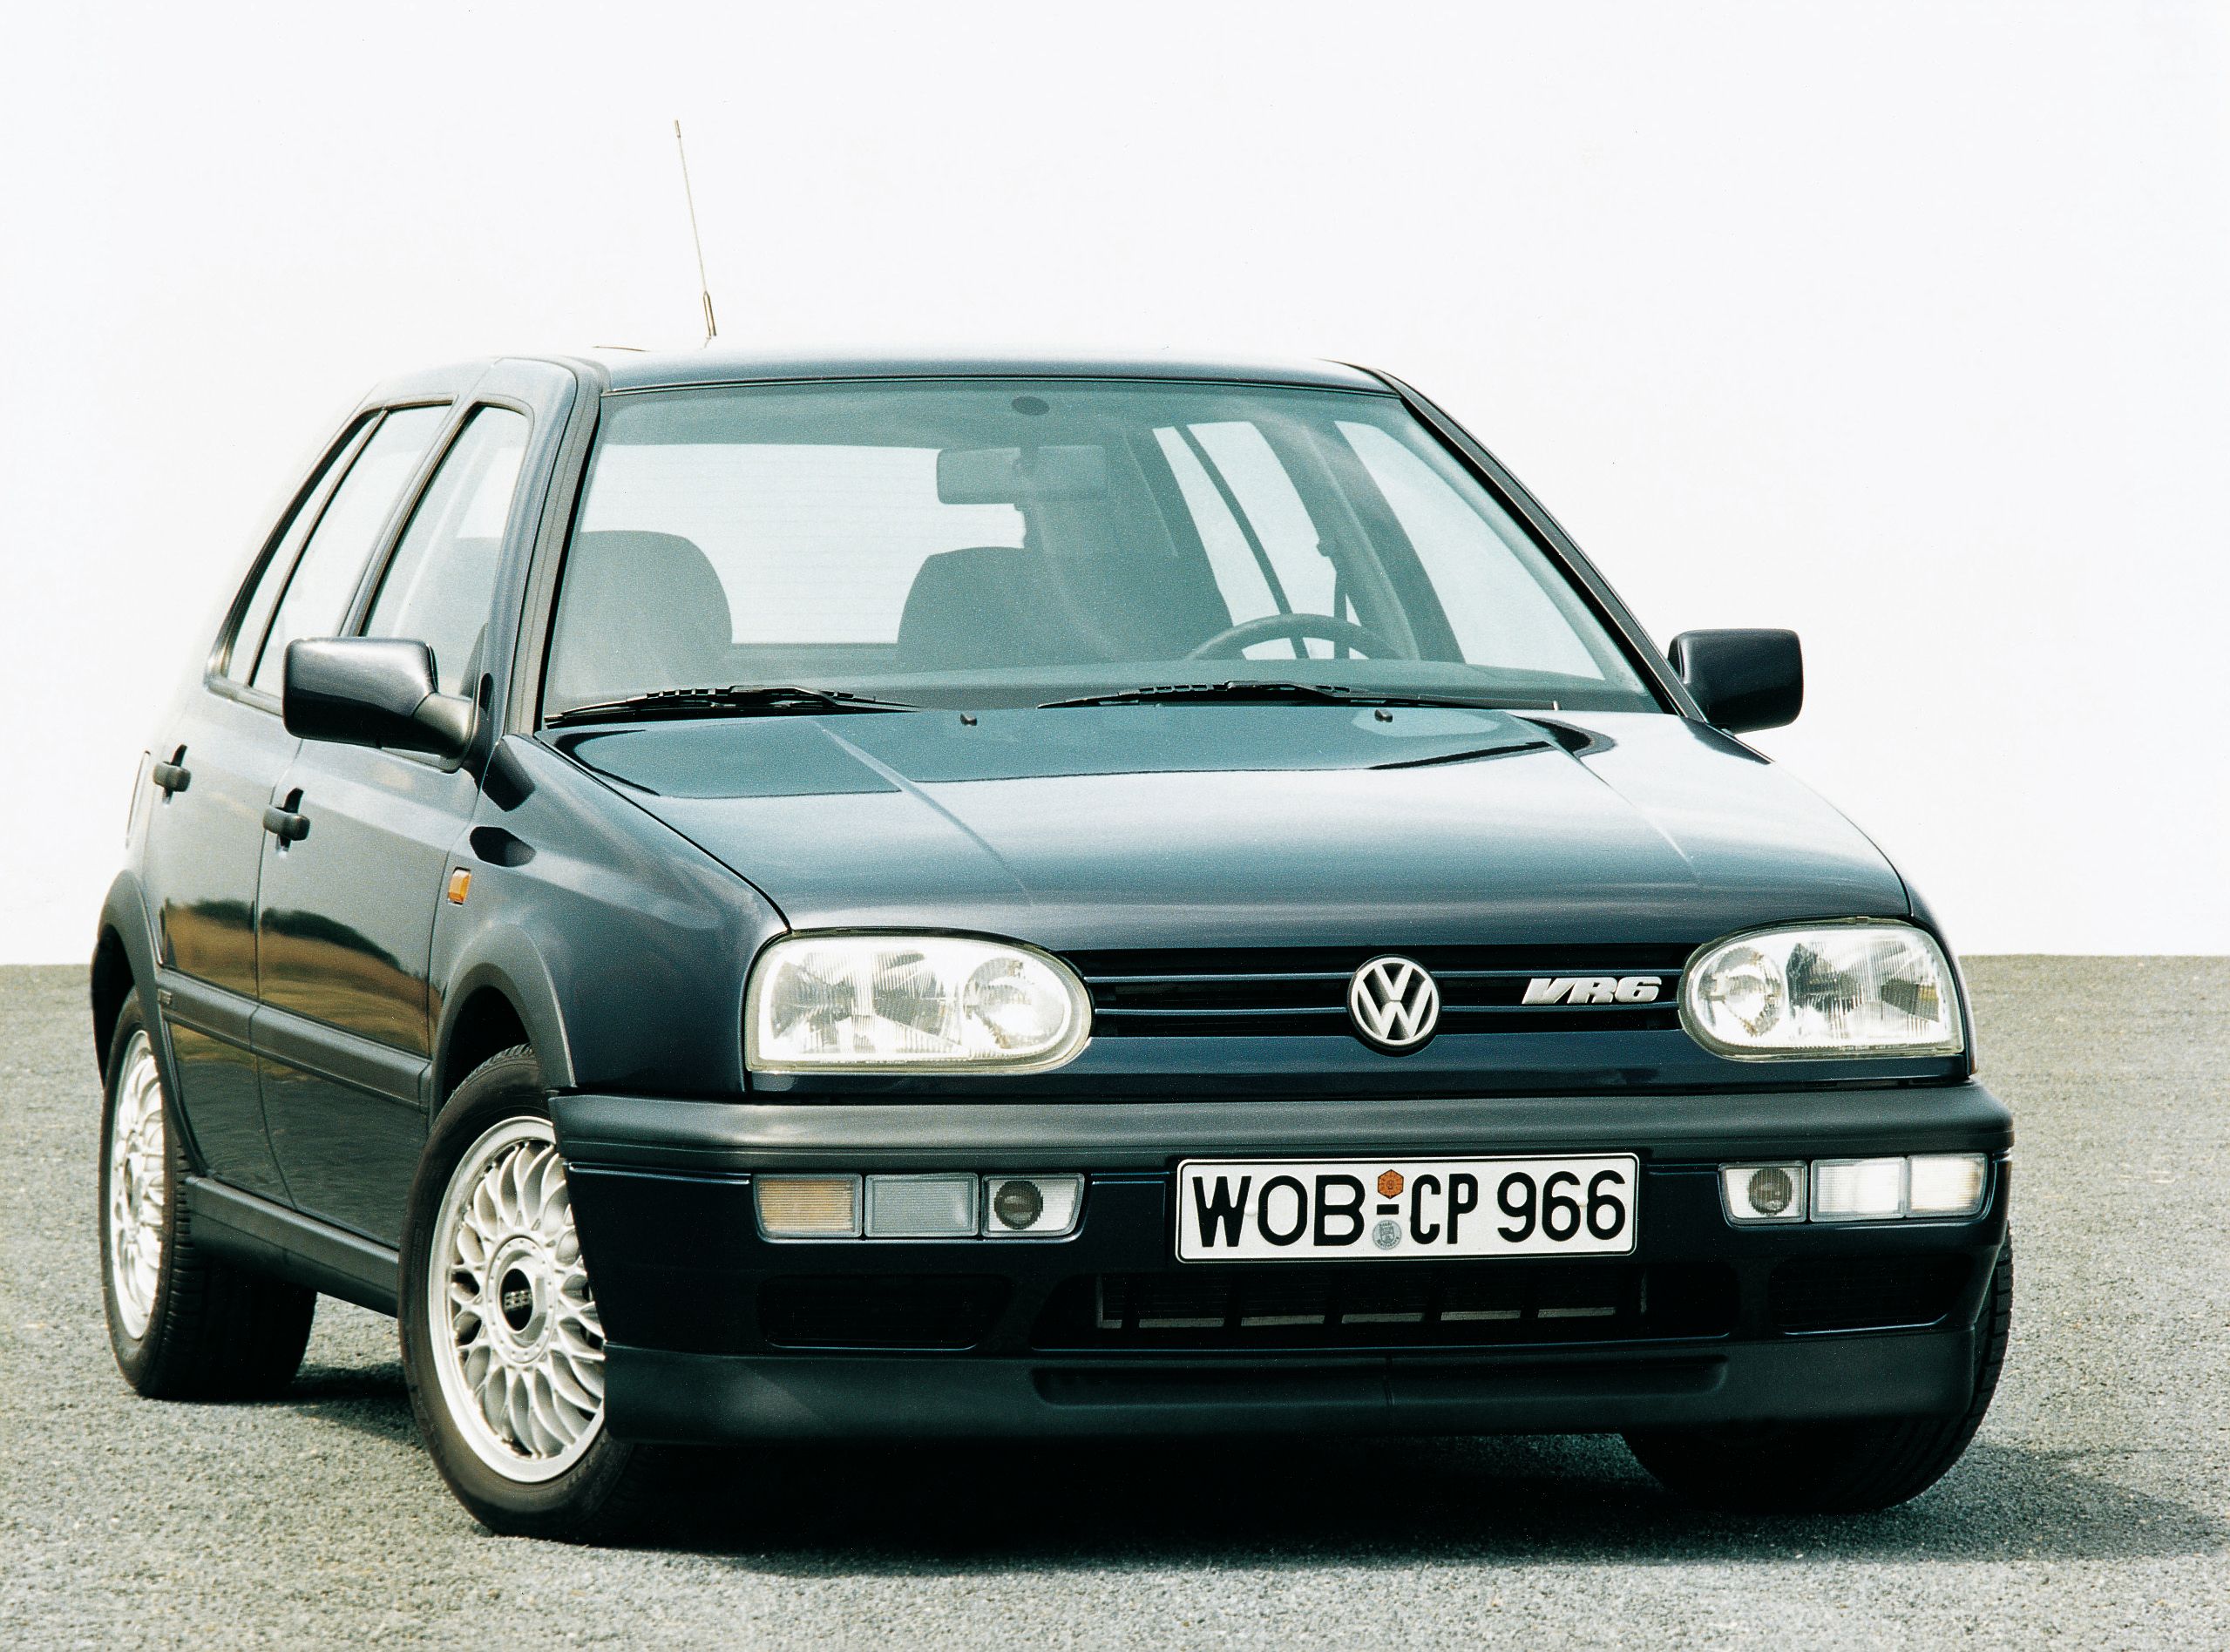 Гольф 3 минск. VW Golf 3. Volkswagen гольф 3. Фольксваген гольф 3 1991. Фольксваген гольф 3 vr6.